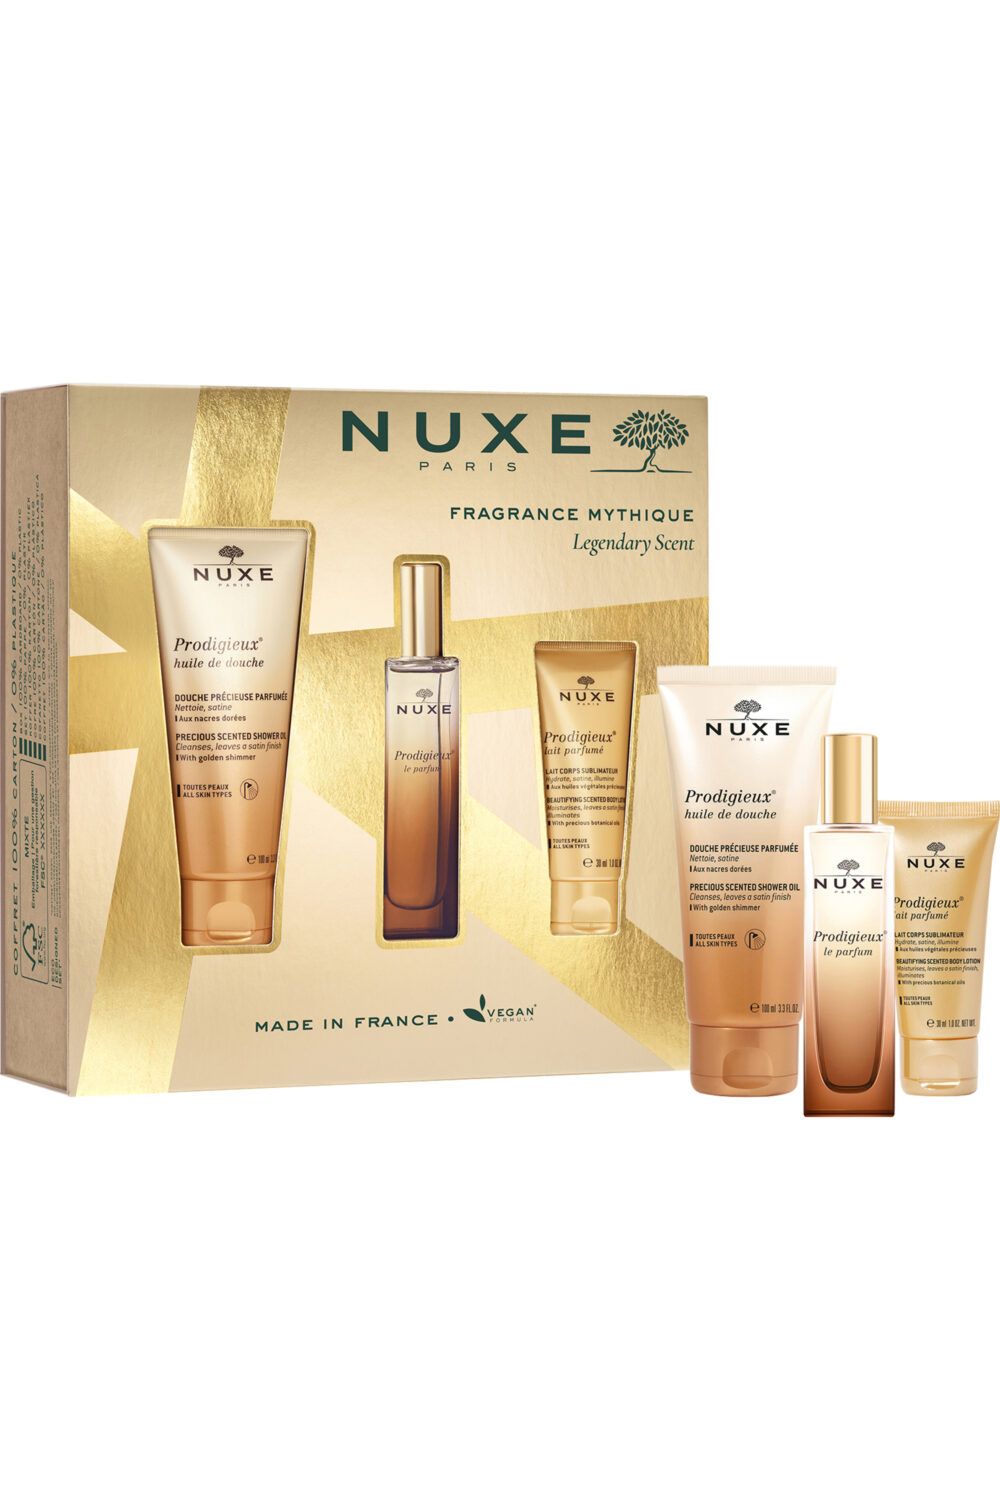 Nuxe - Coffret Fragrance Mythique Prodigieux® Parfum